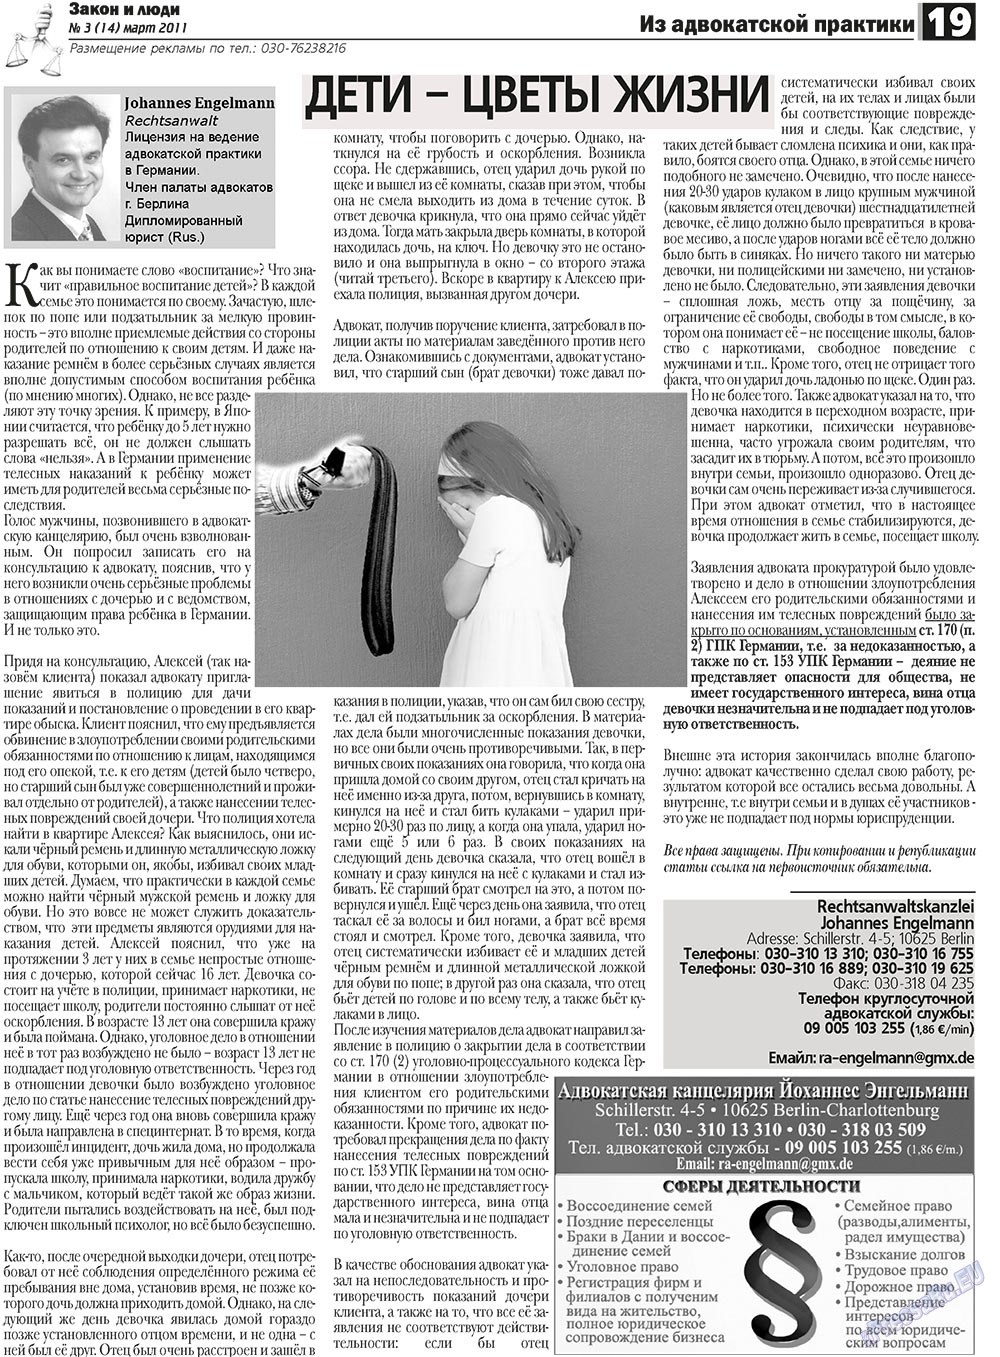 Закон и люди, газета. 2011 №3 стр.19